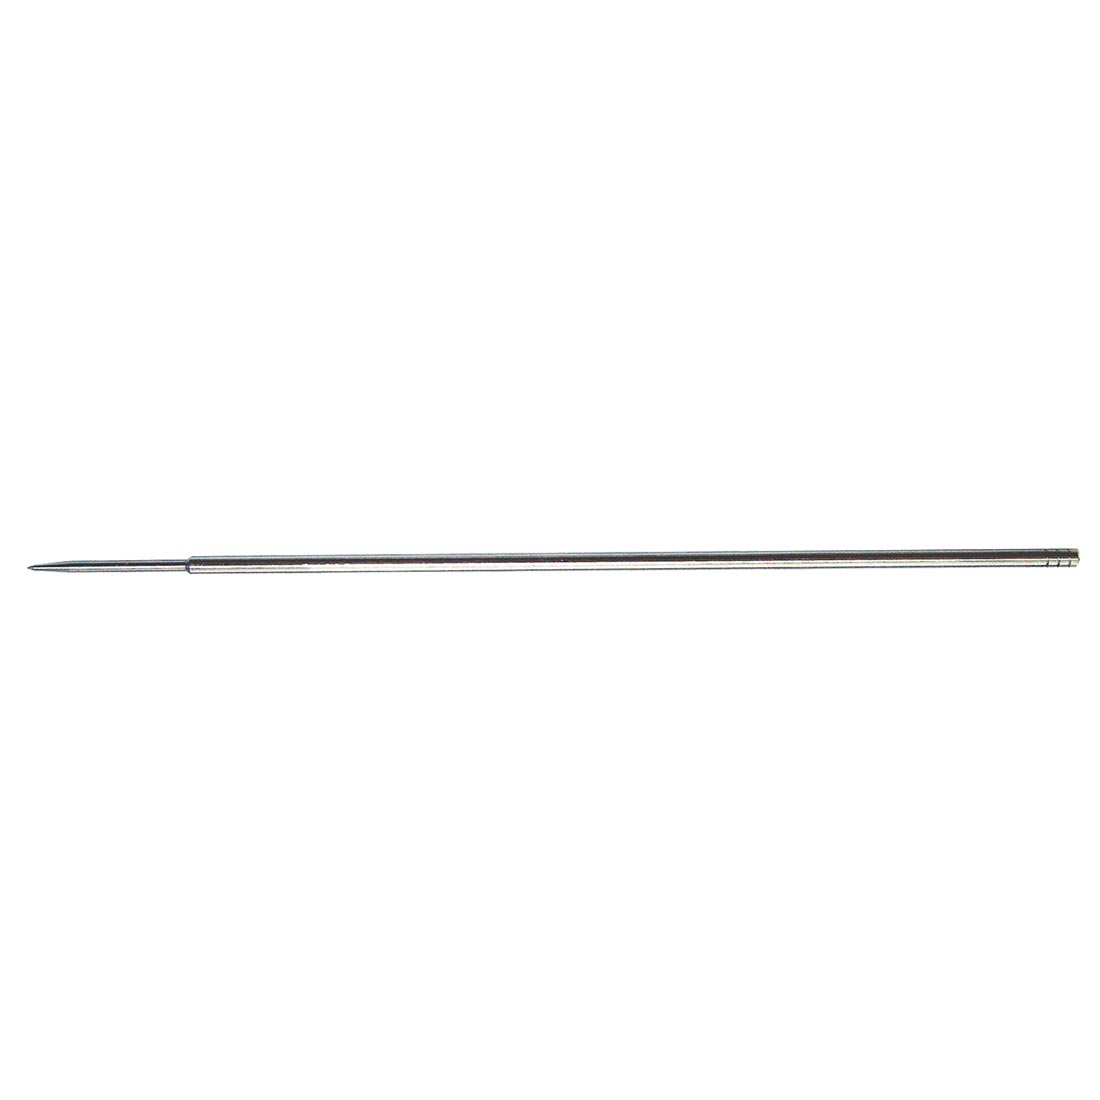 Paasche VL Airbrush Needle